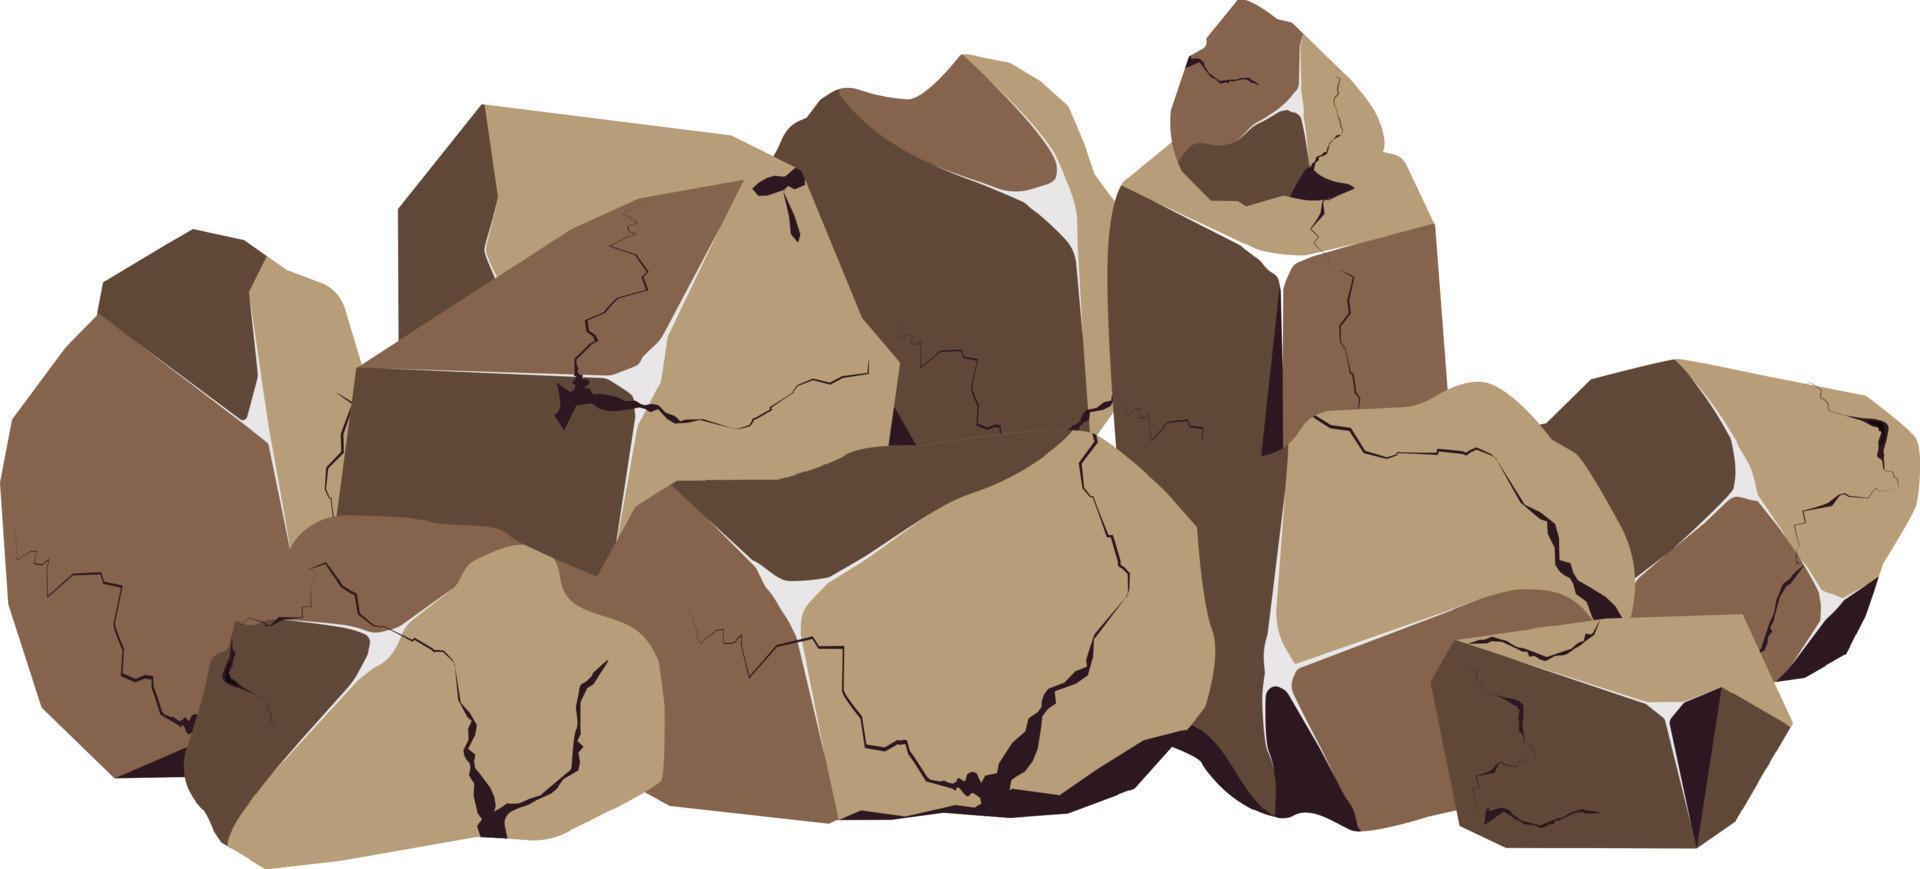 coleção de pedras de várias formas e seixos moss.costal, paralelepípedos, cascalho, minerais e formações geológicas. fragmentos de rocha, pedregulhos e material de construção. vetor